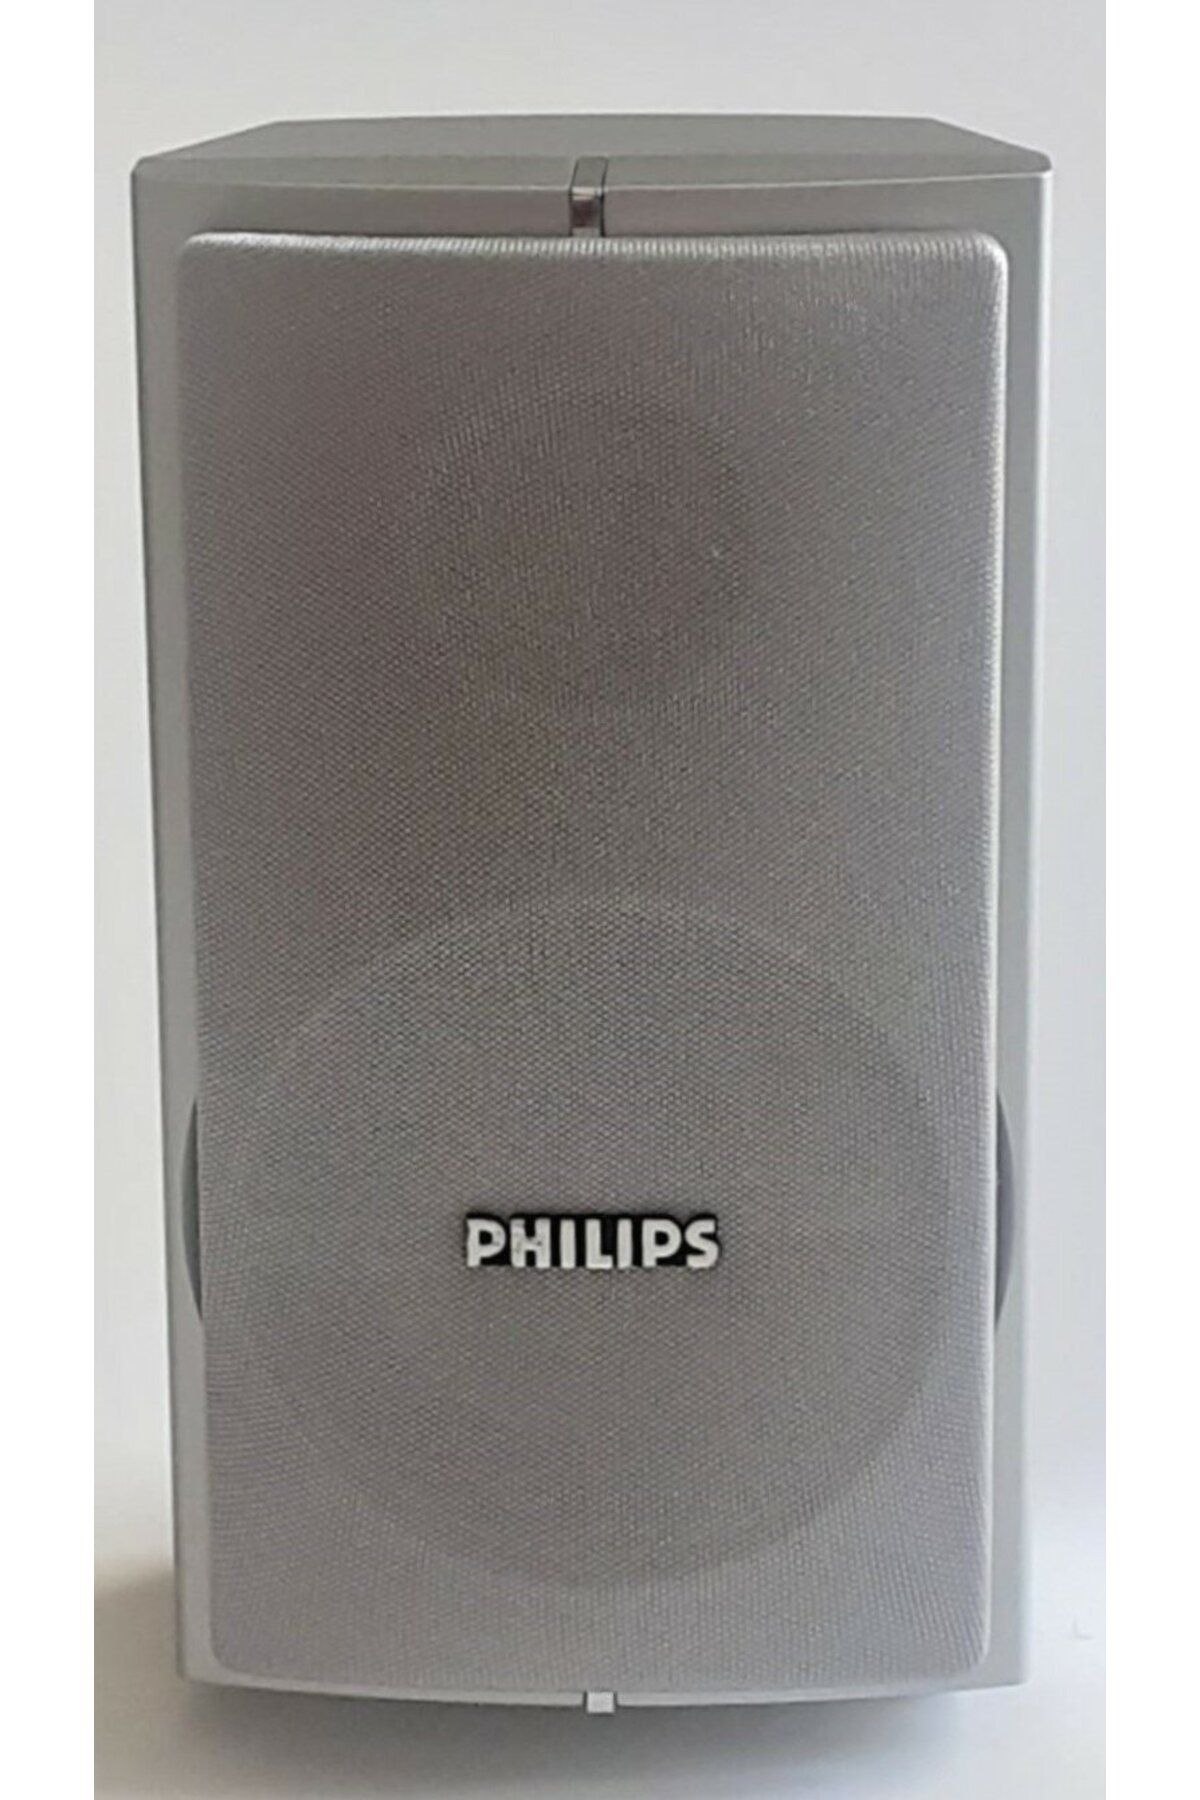 Philips Cs 7100 Hoparlör